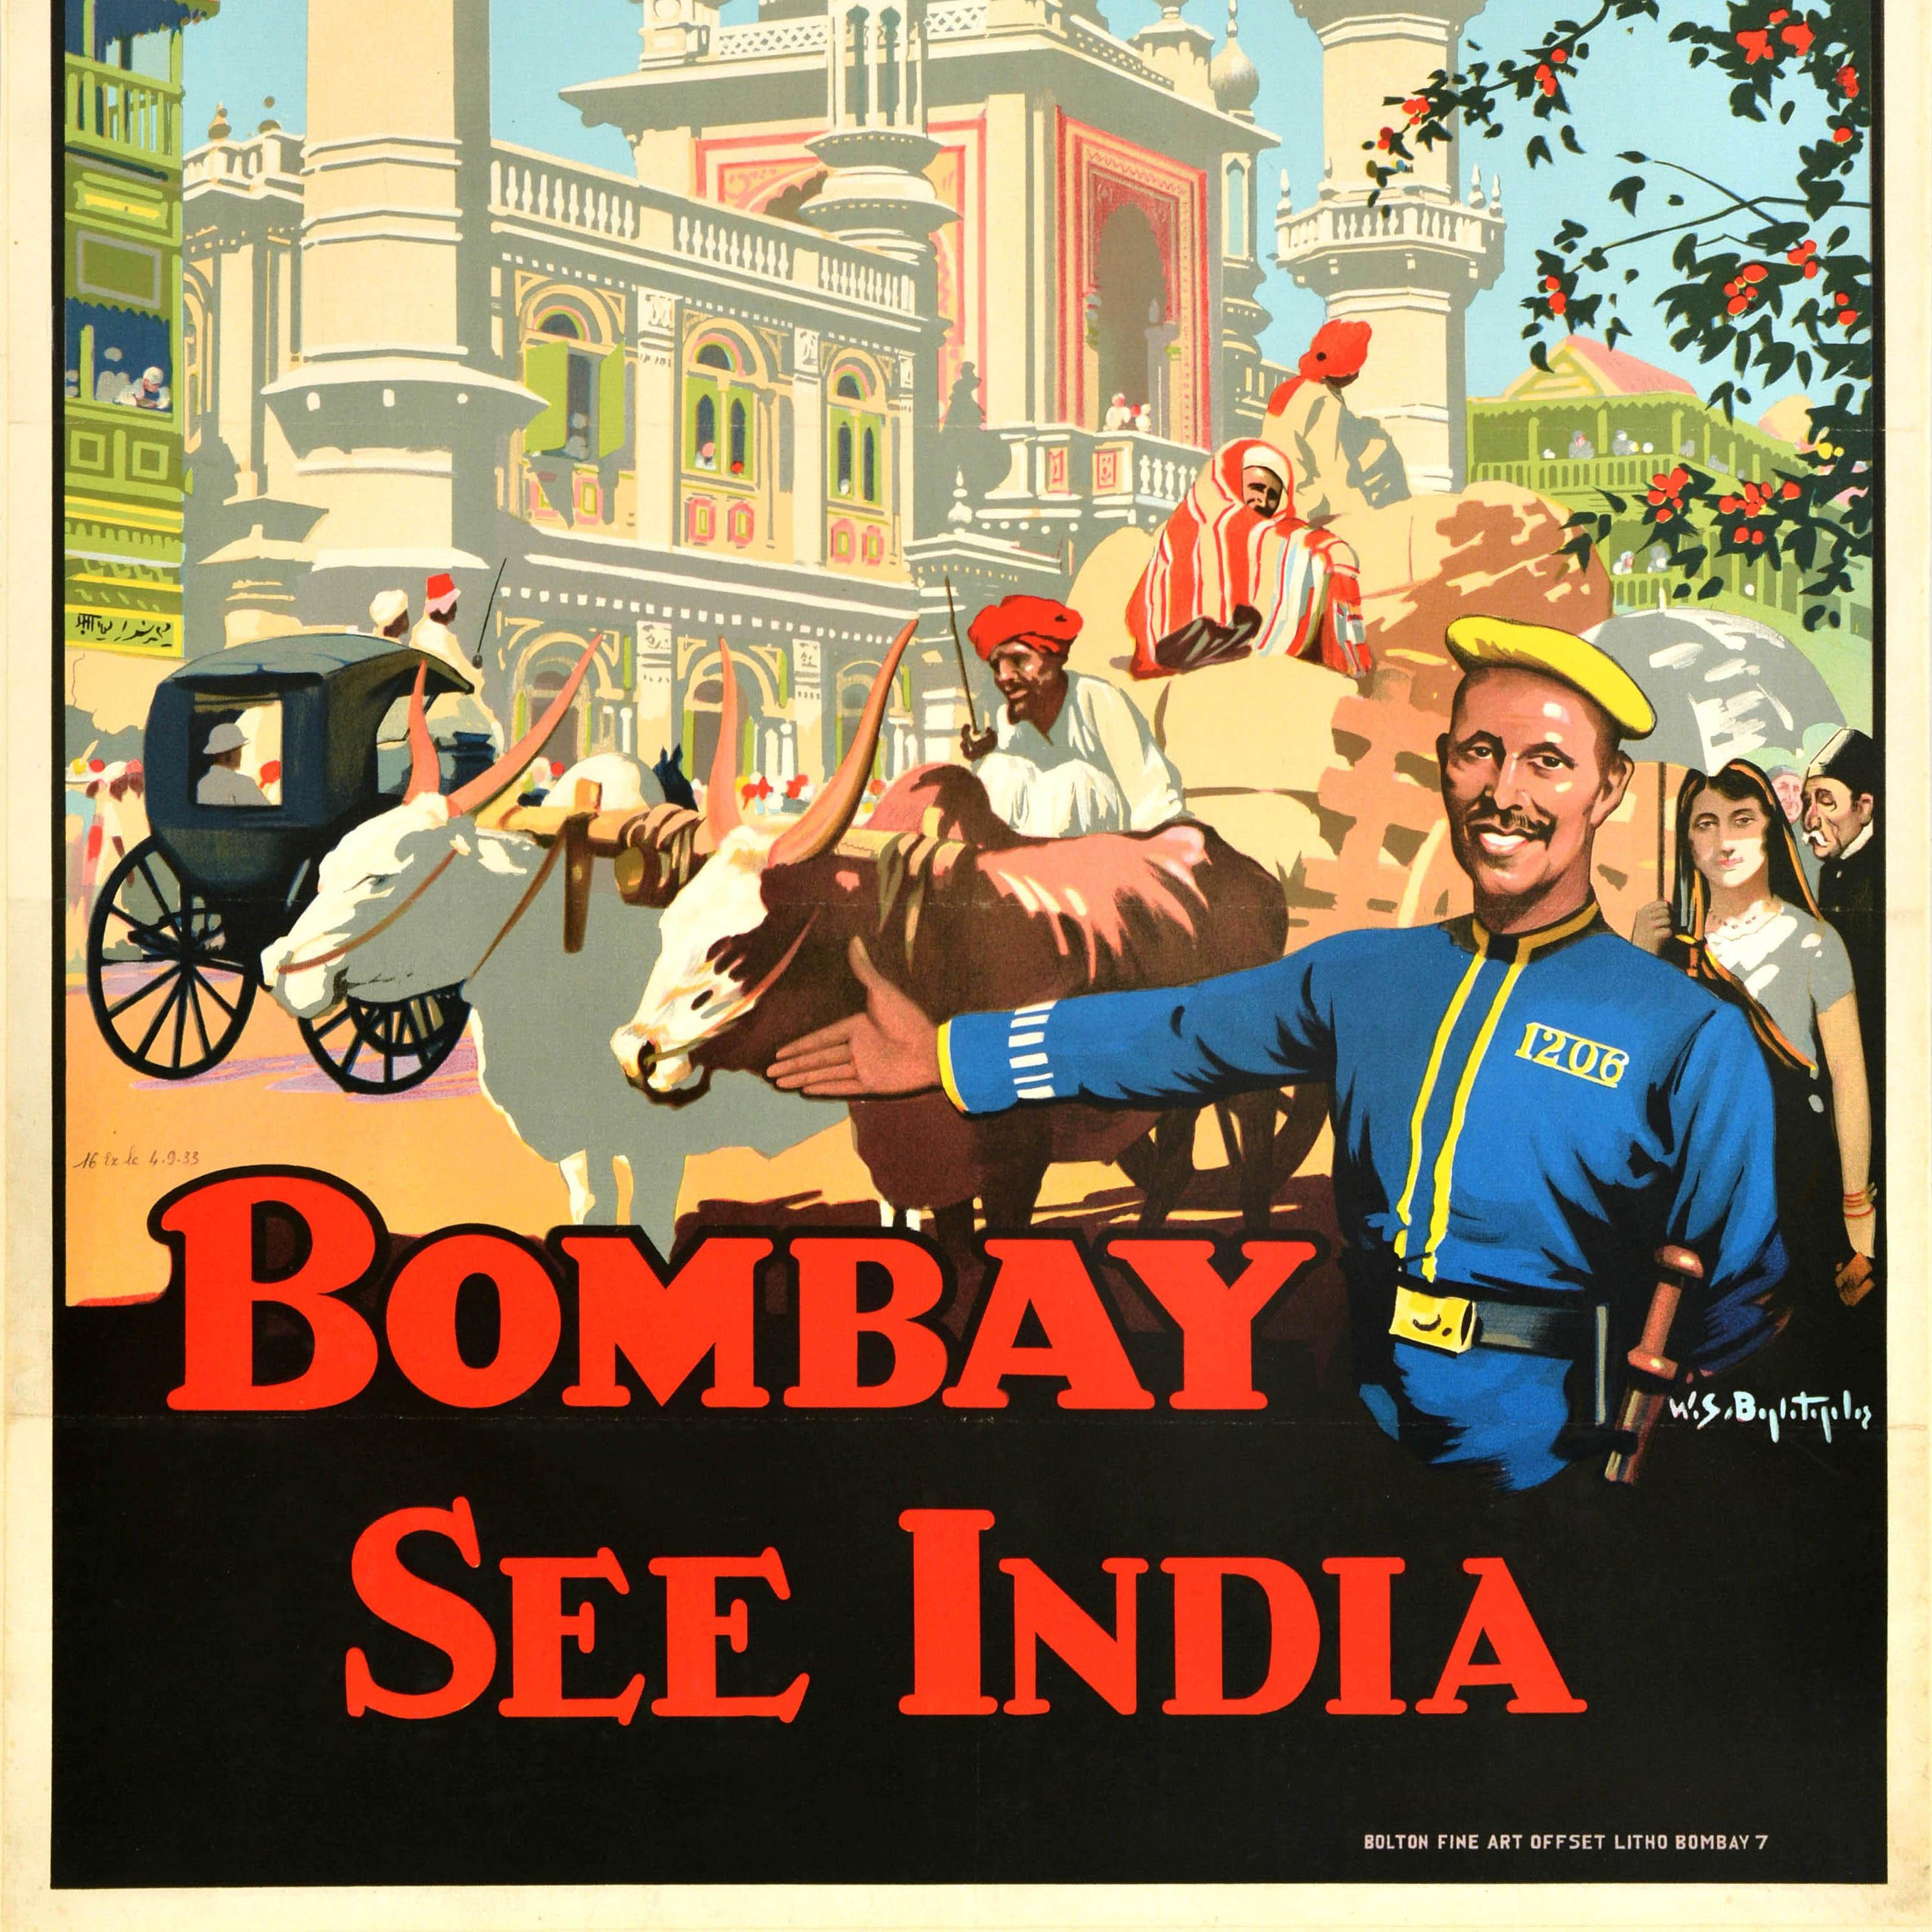 Original Vintage-Reiseplakat - Bombay See India - mit einem tollen Design, das Männer auf einem Ochsenkarren, Menschen auf der belebten Straße und eine Pferdekutsche vor einem alten Tempelgebäude mit Kuppel und Türmen zeigt, darunter der fette Text